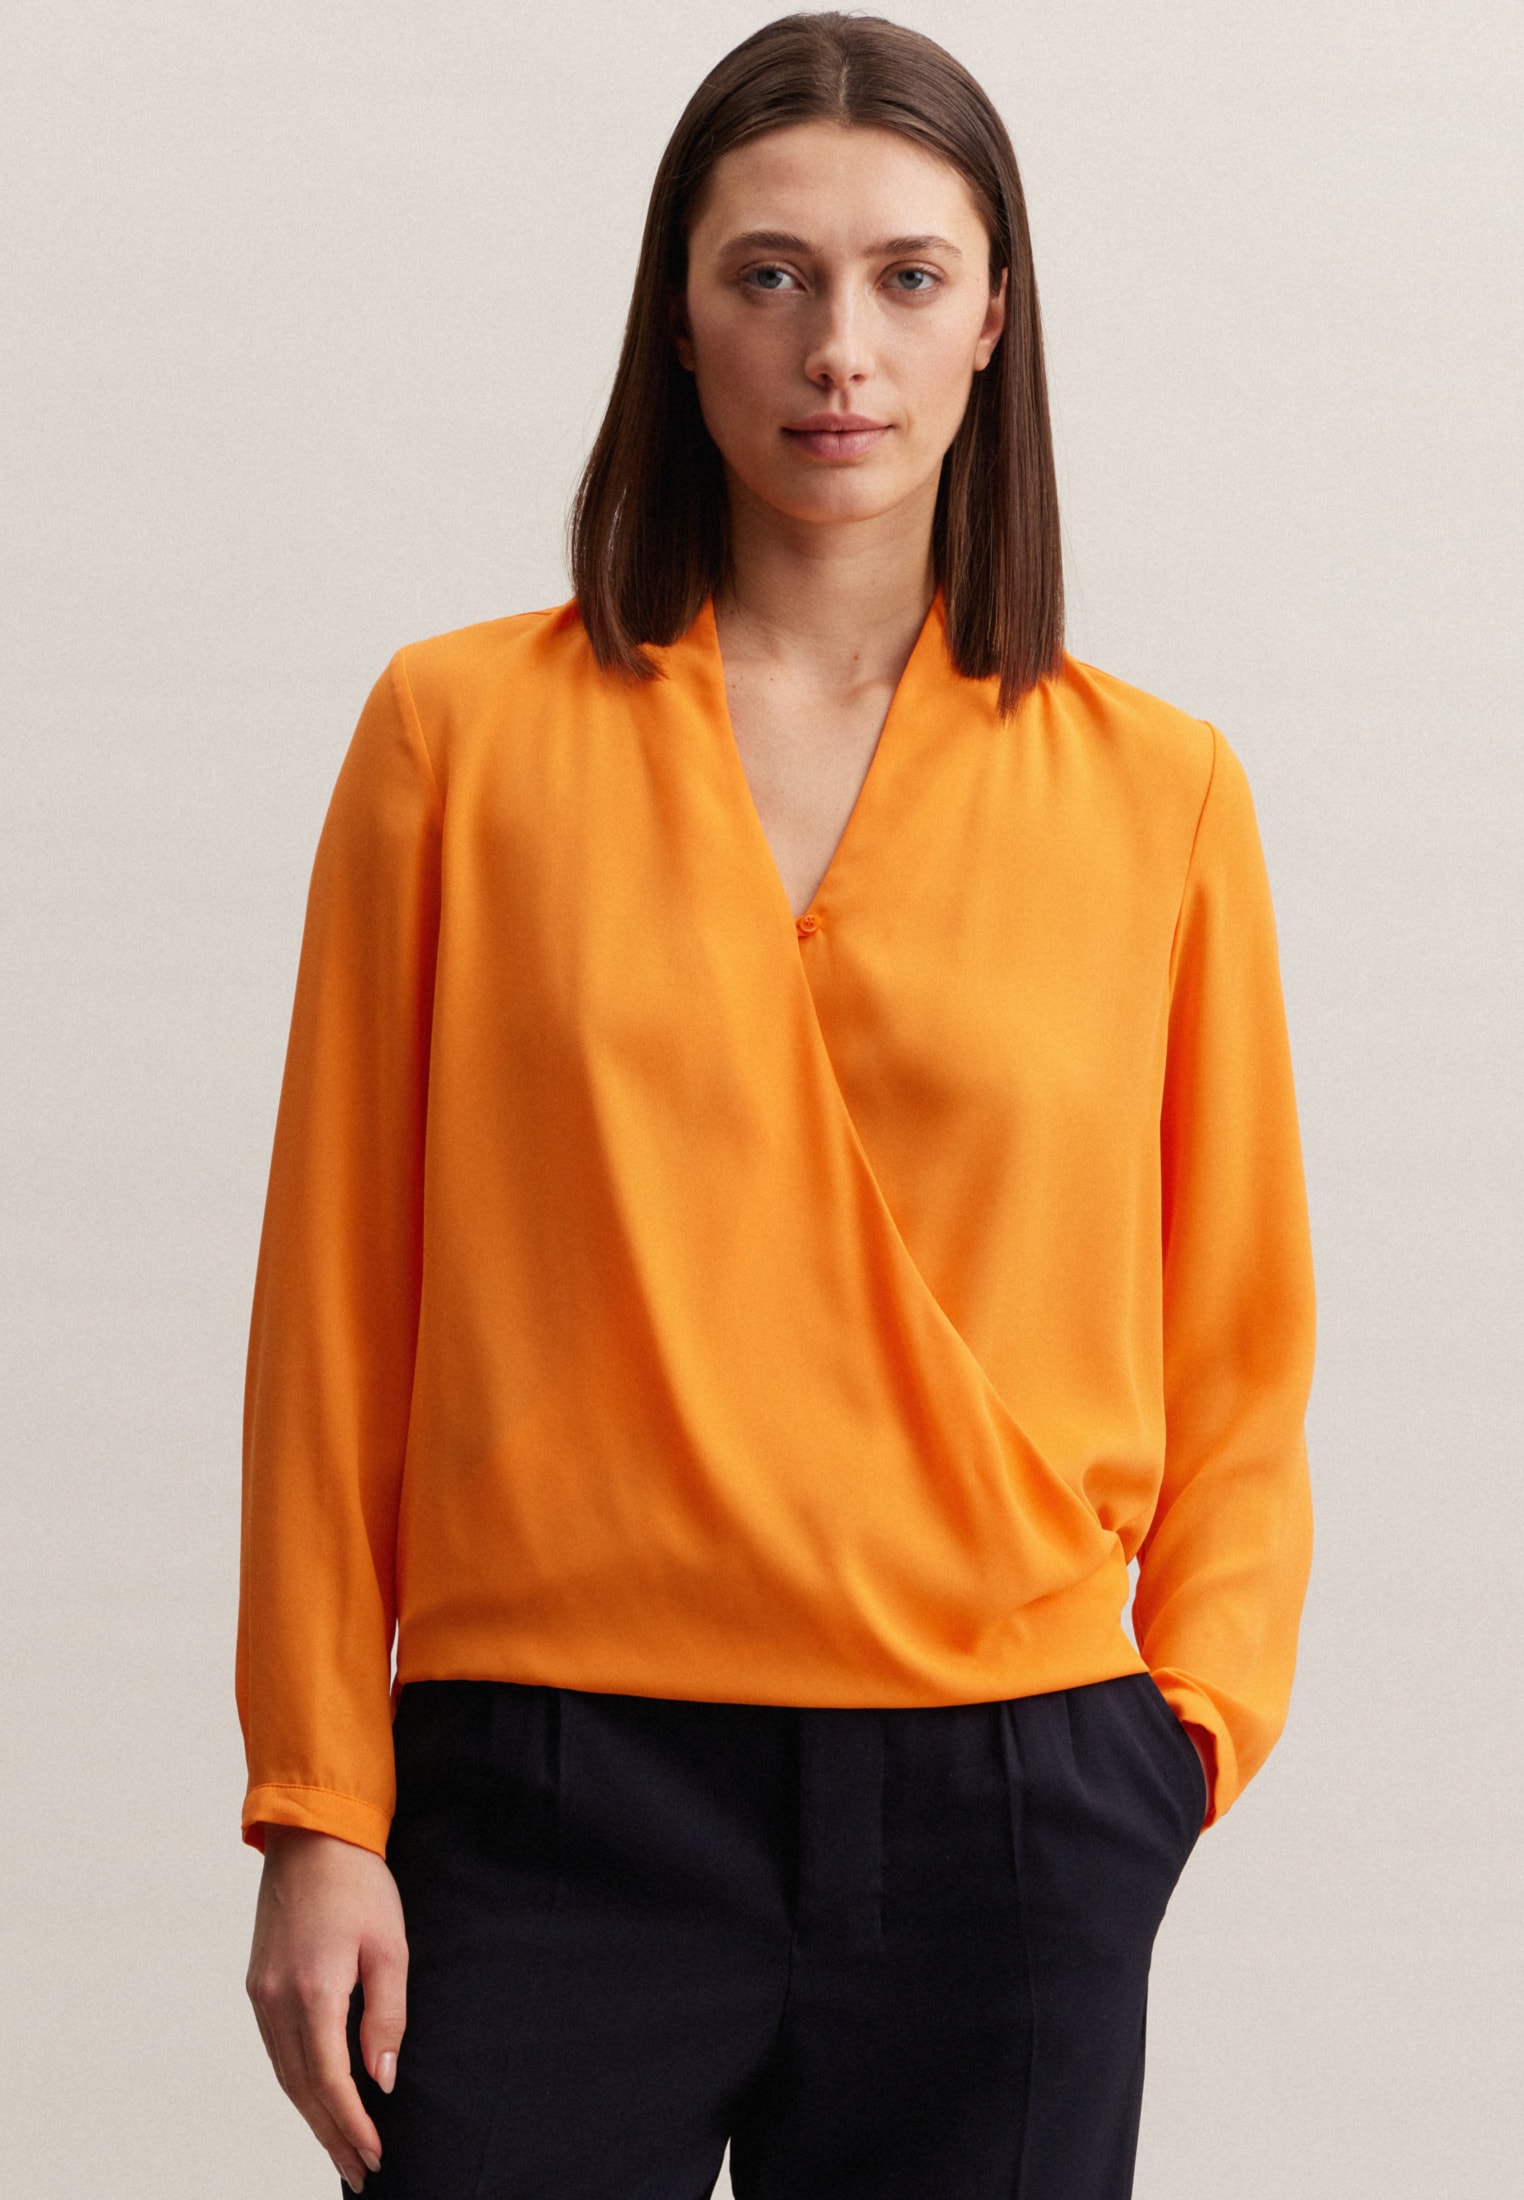 Blusen orange für Frauen kaufen | BAUR